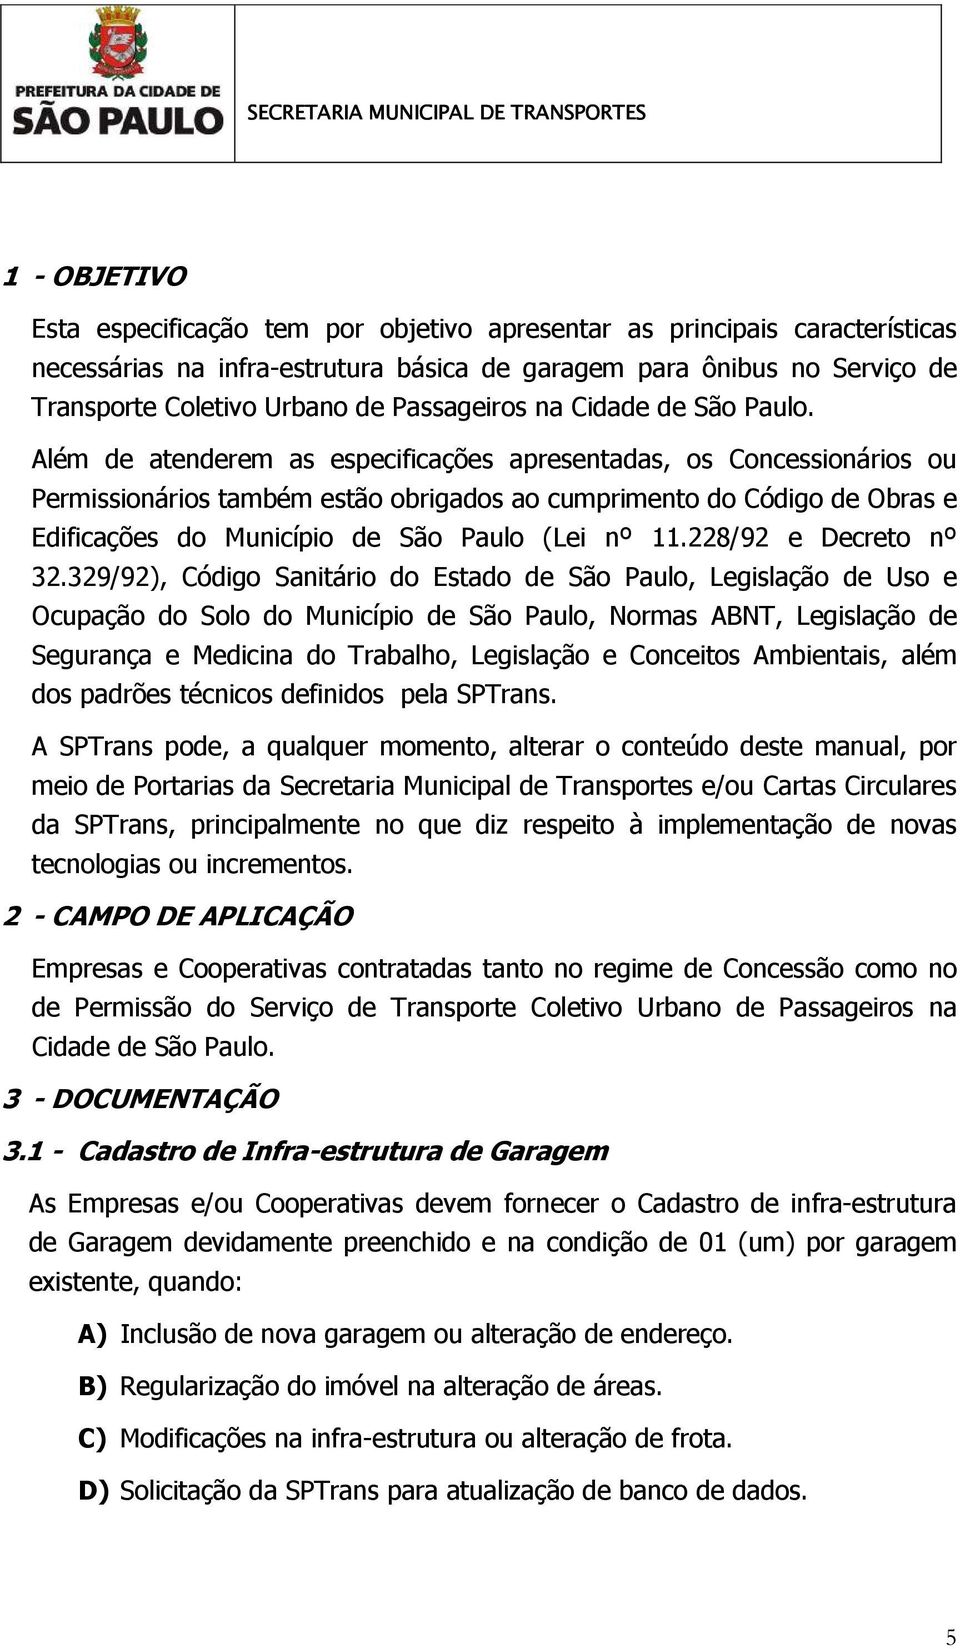 Além de atenderem as especificações apresentadas, os Concessionários ou Permissionários também estão obrigados ao cumprimento do Código de Obras e Edificações do Município de São Paulo (Lei nº 11.